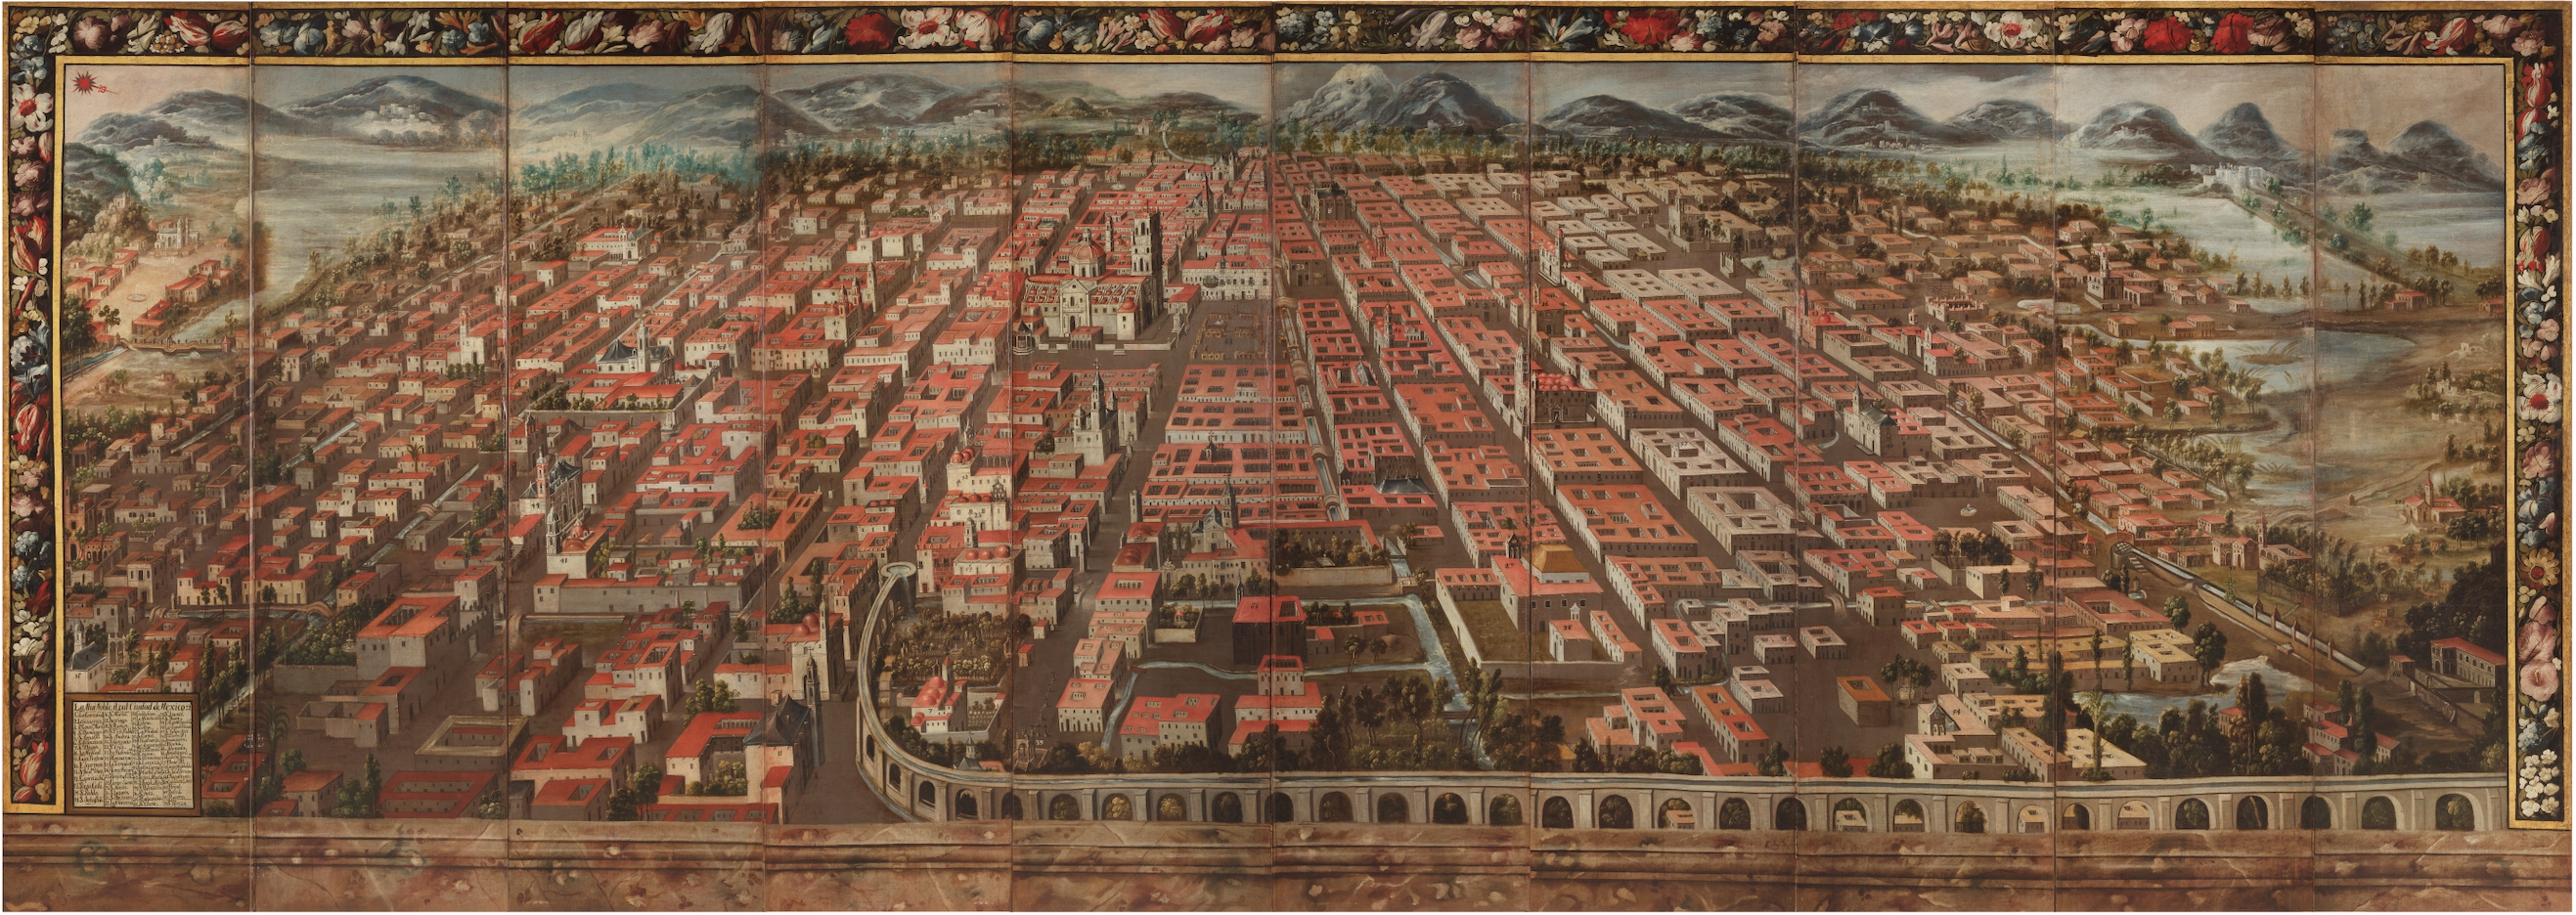 4.	Autor Anónimo, Vista de la ciudad de México, ca. 1680, óleo sobre tela, 201.8 x 560 cm, ©Museo Soumaya. 